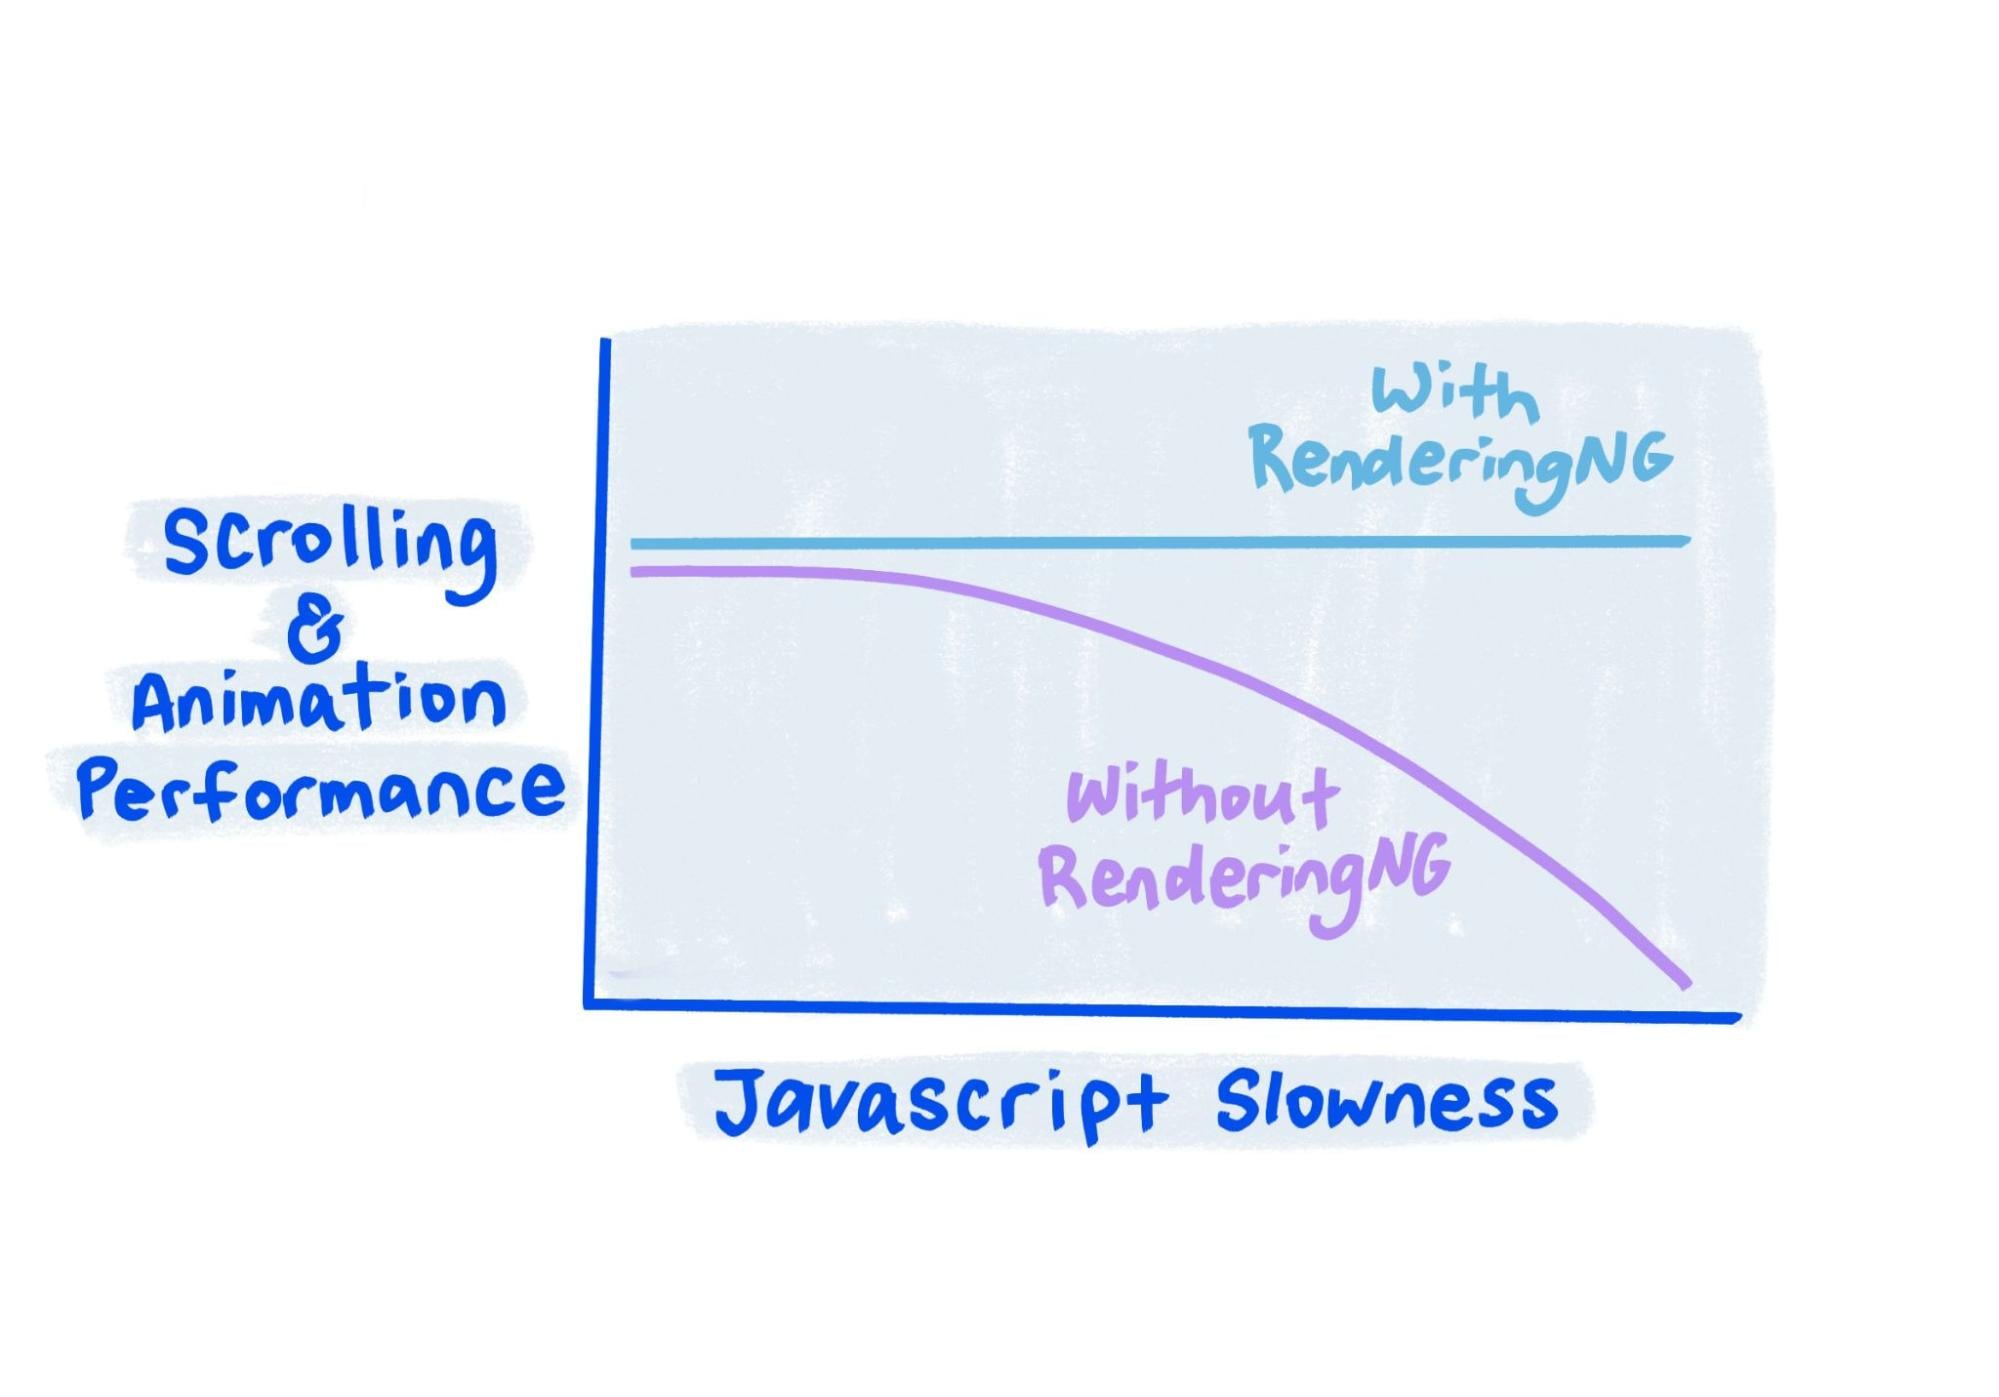 يوضِّح Sketch (الرسم البياني) أنّه باستخدام RenderingNG يبقى ثابتًا حتى عندما يكون JavaScript بطيئًا جدًا.